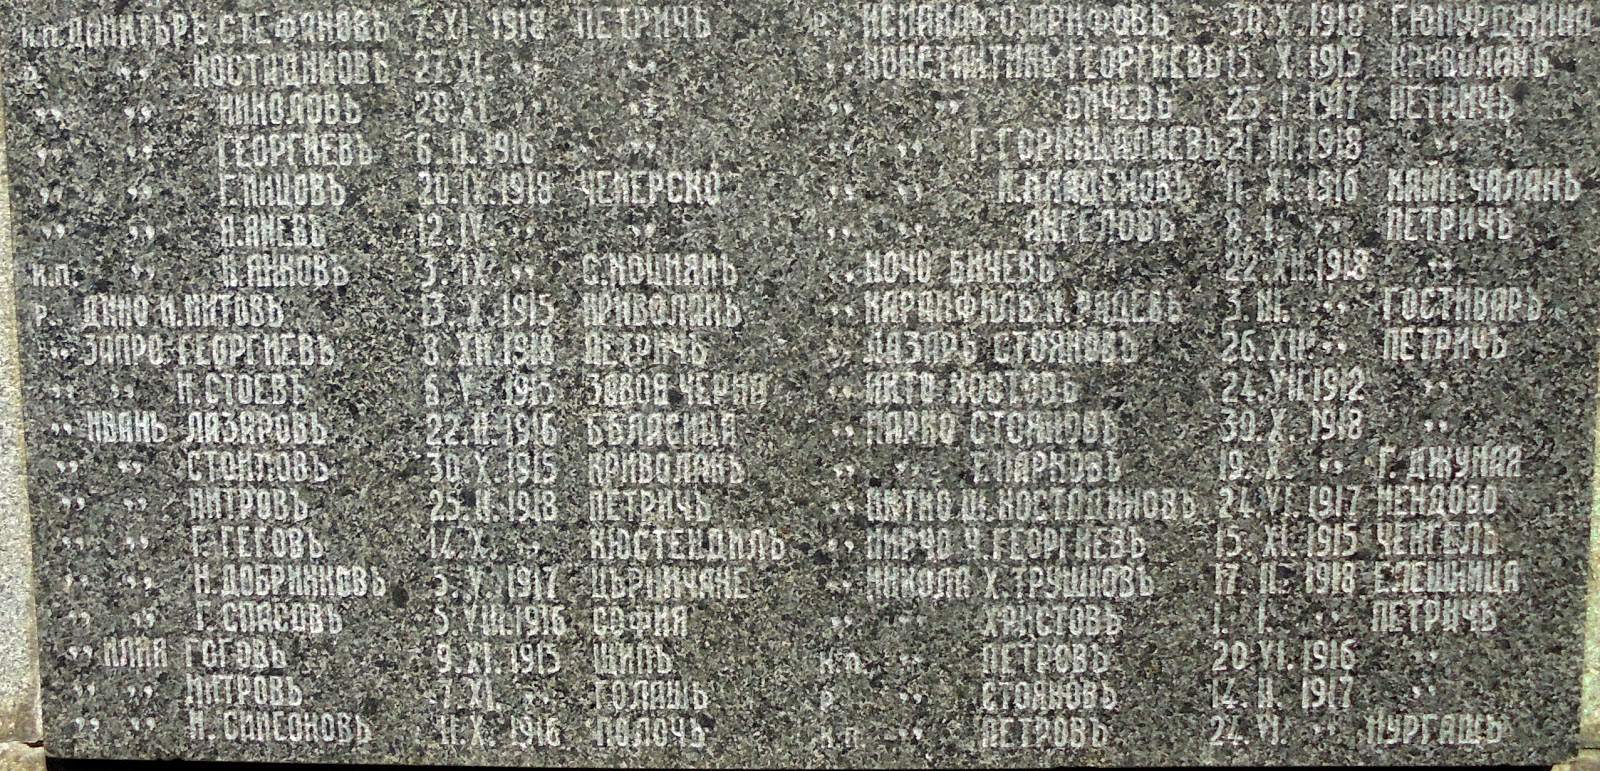 το Μνημείο αυτών που πεθάναν για την πατρίδα στο Πετρίτσι